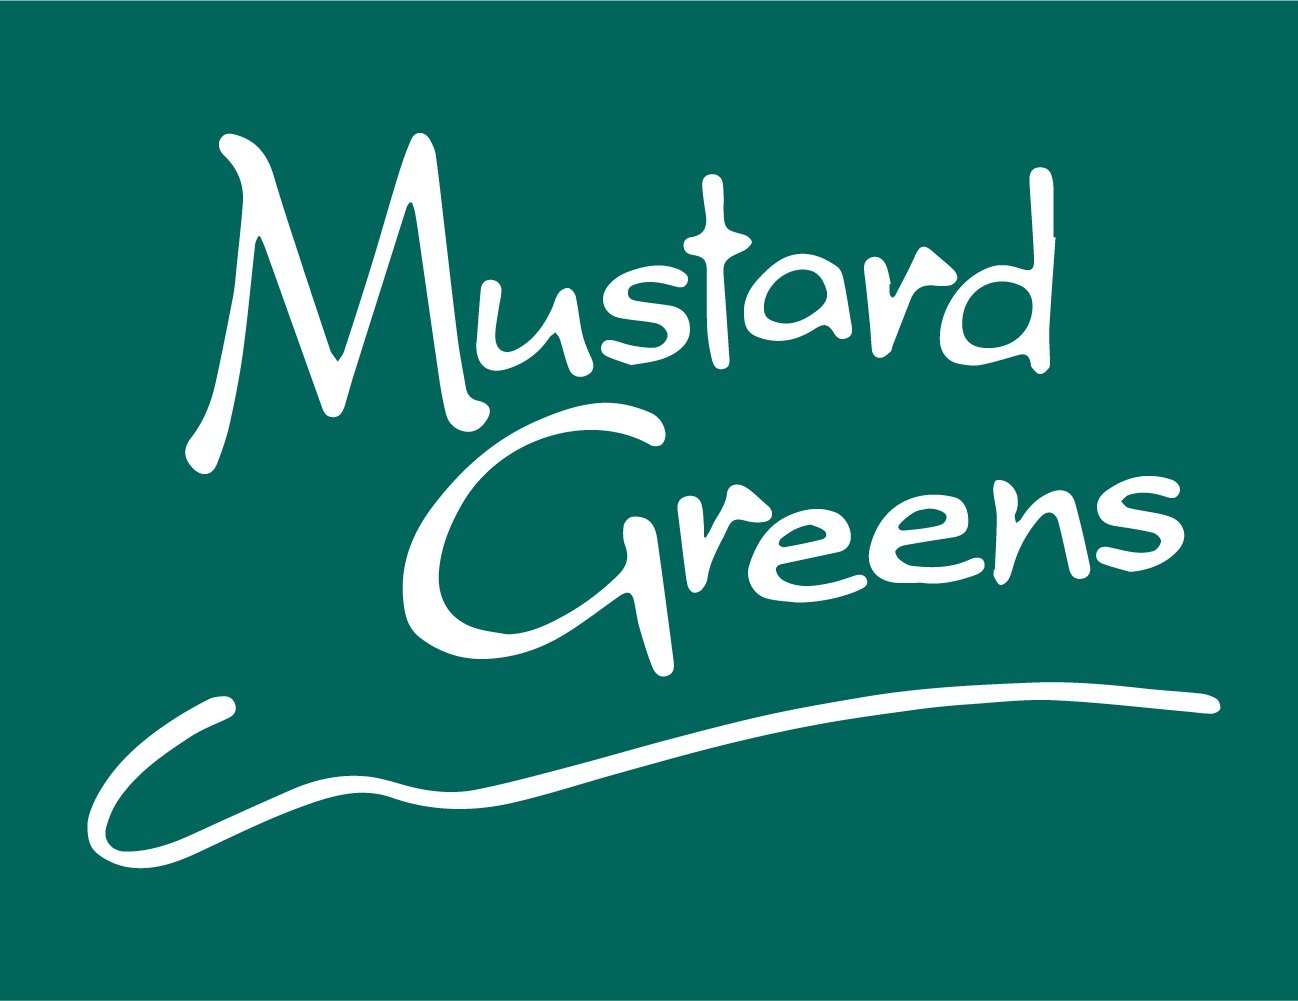 Mustard Greens